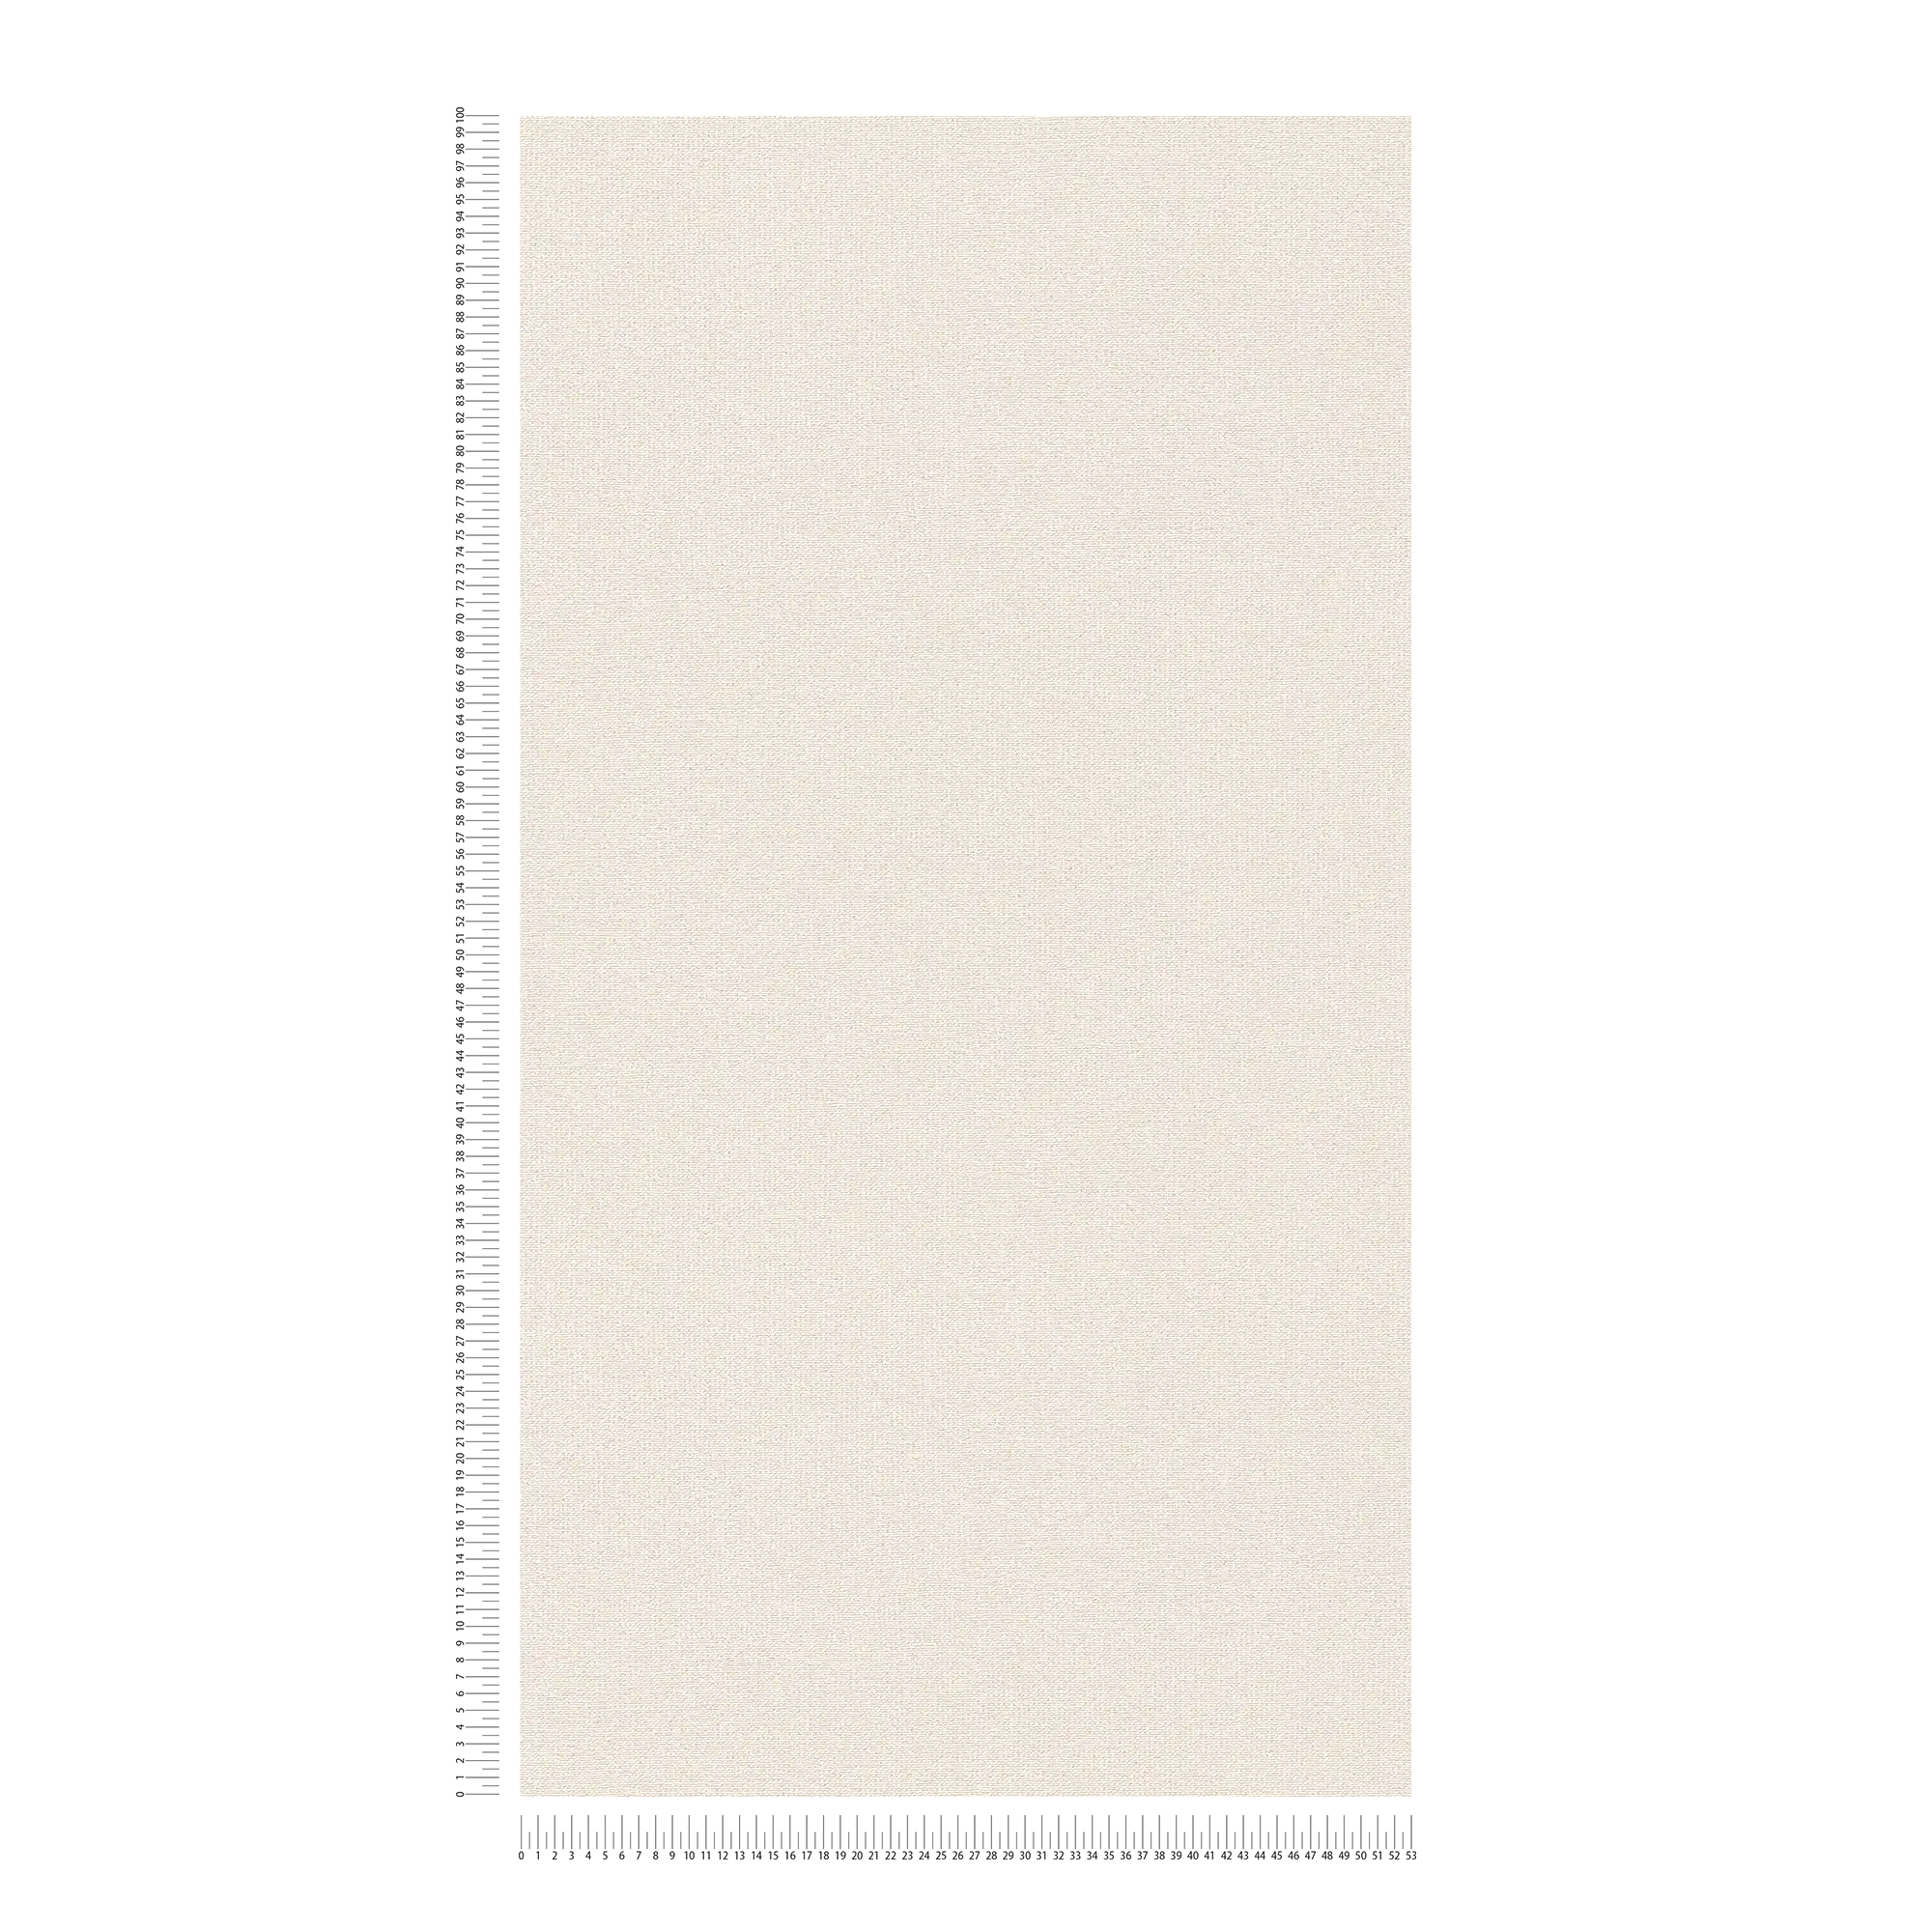             Papier peint intissé naturel mat à structure lin - crème, beige
        